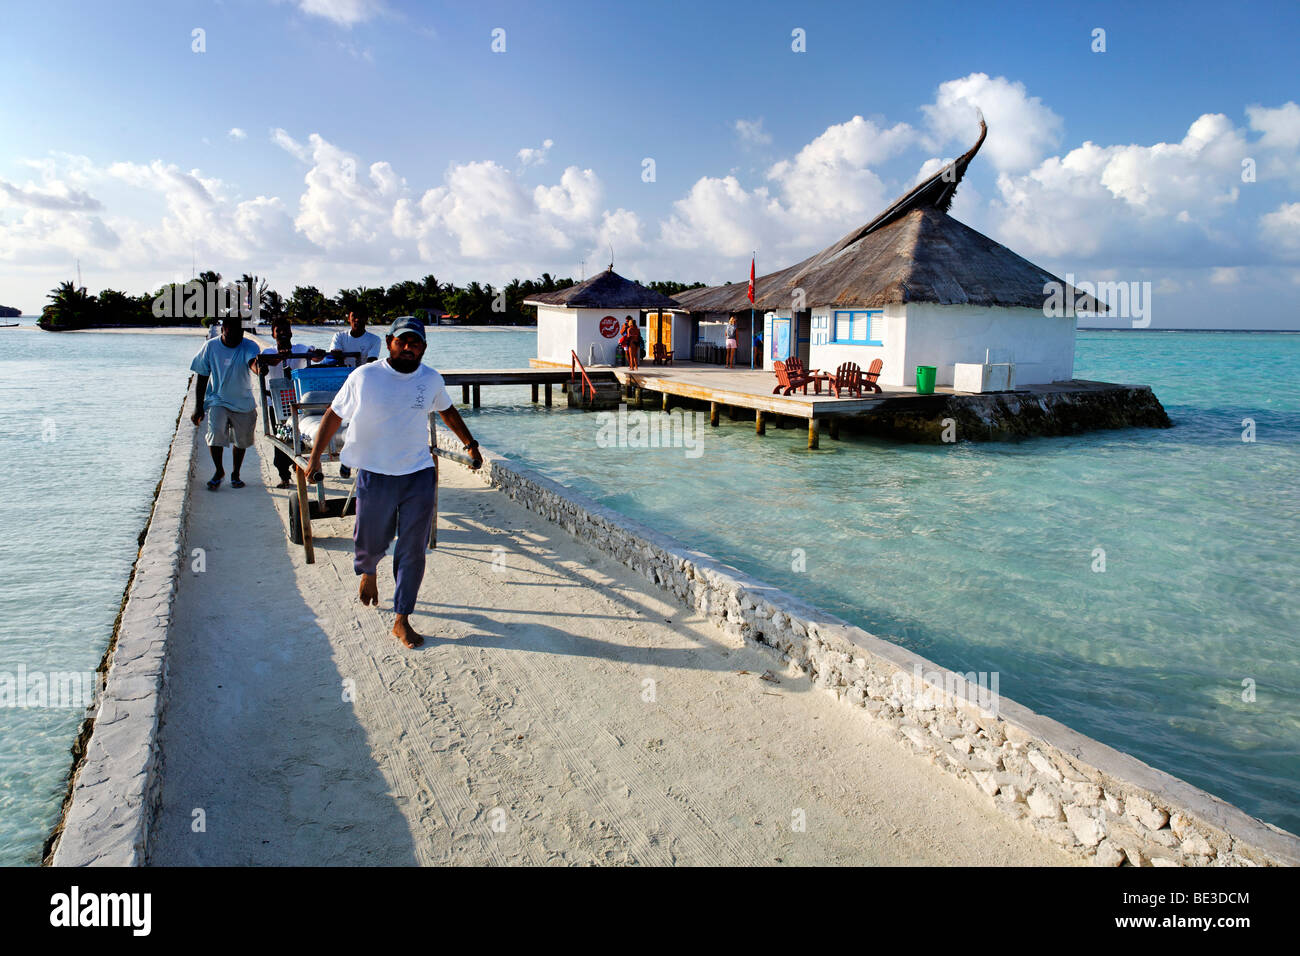 Les maldiviens à une jetée transporter les réservoirs de plongée en aluminium, les Maldives island, South Male Atoll, Maldives, Achipelago, Asie, Océan Indien Banque D'Images